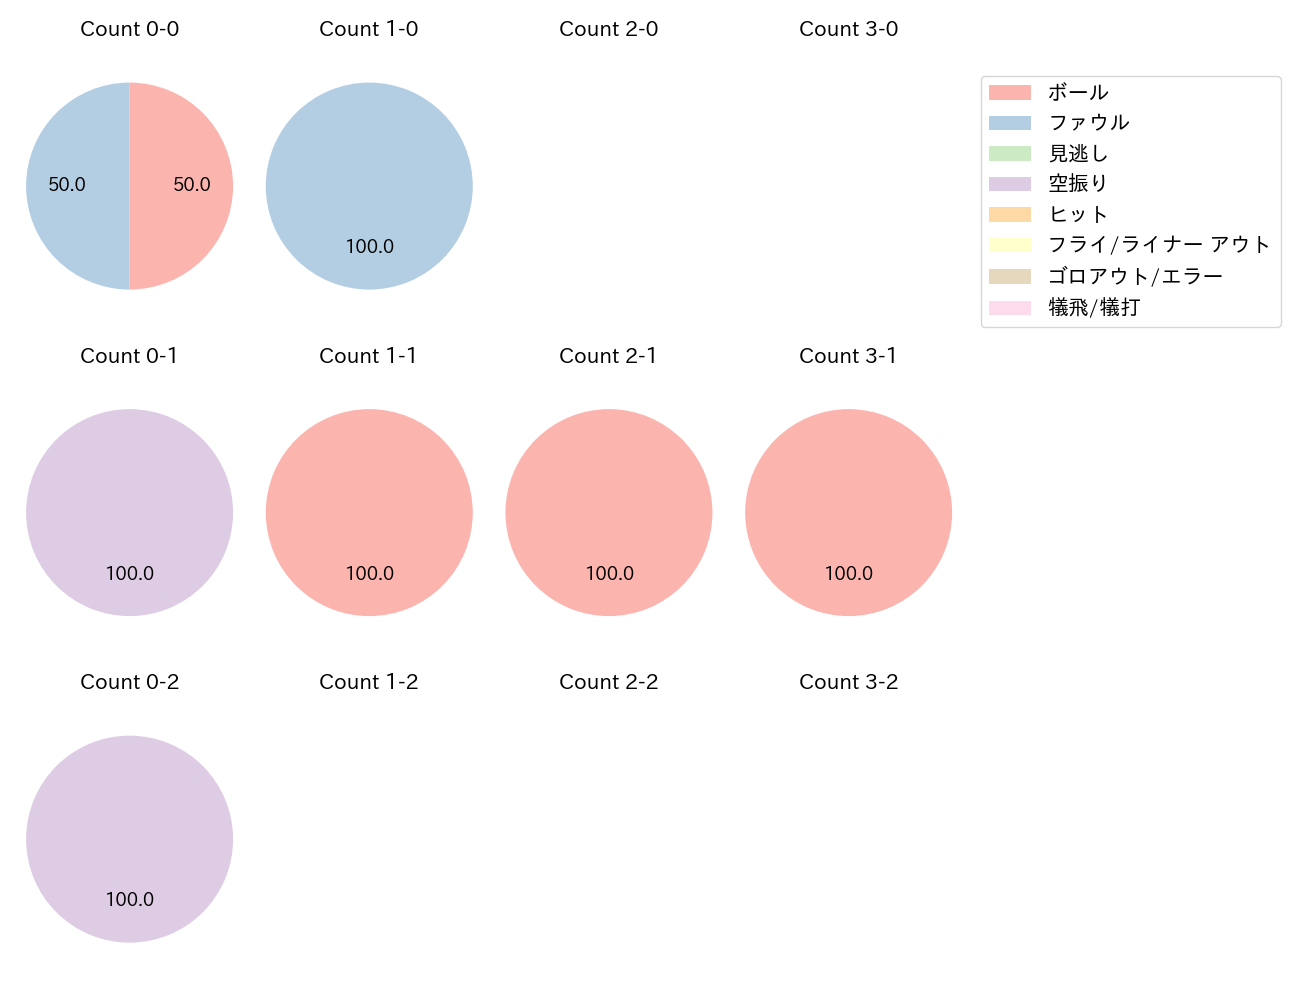 加藤 翔平の球数分布(2022年8月)